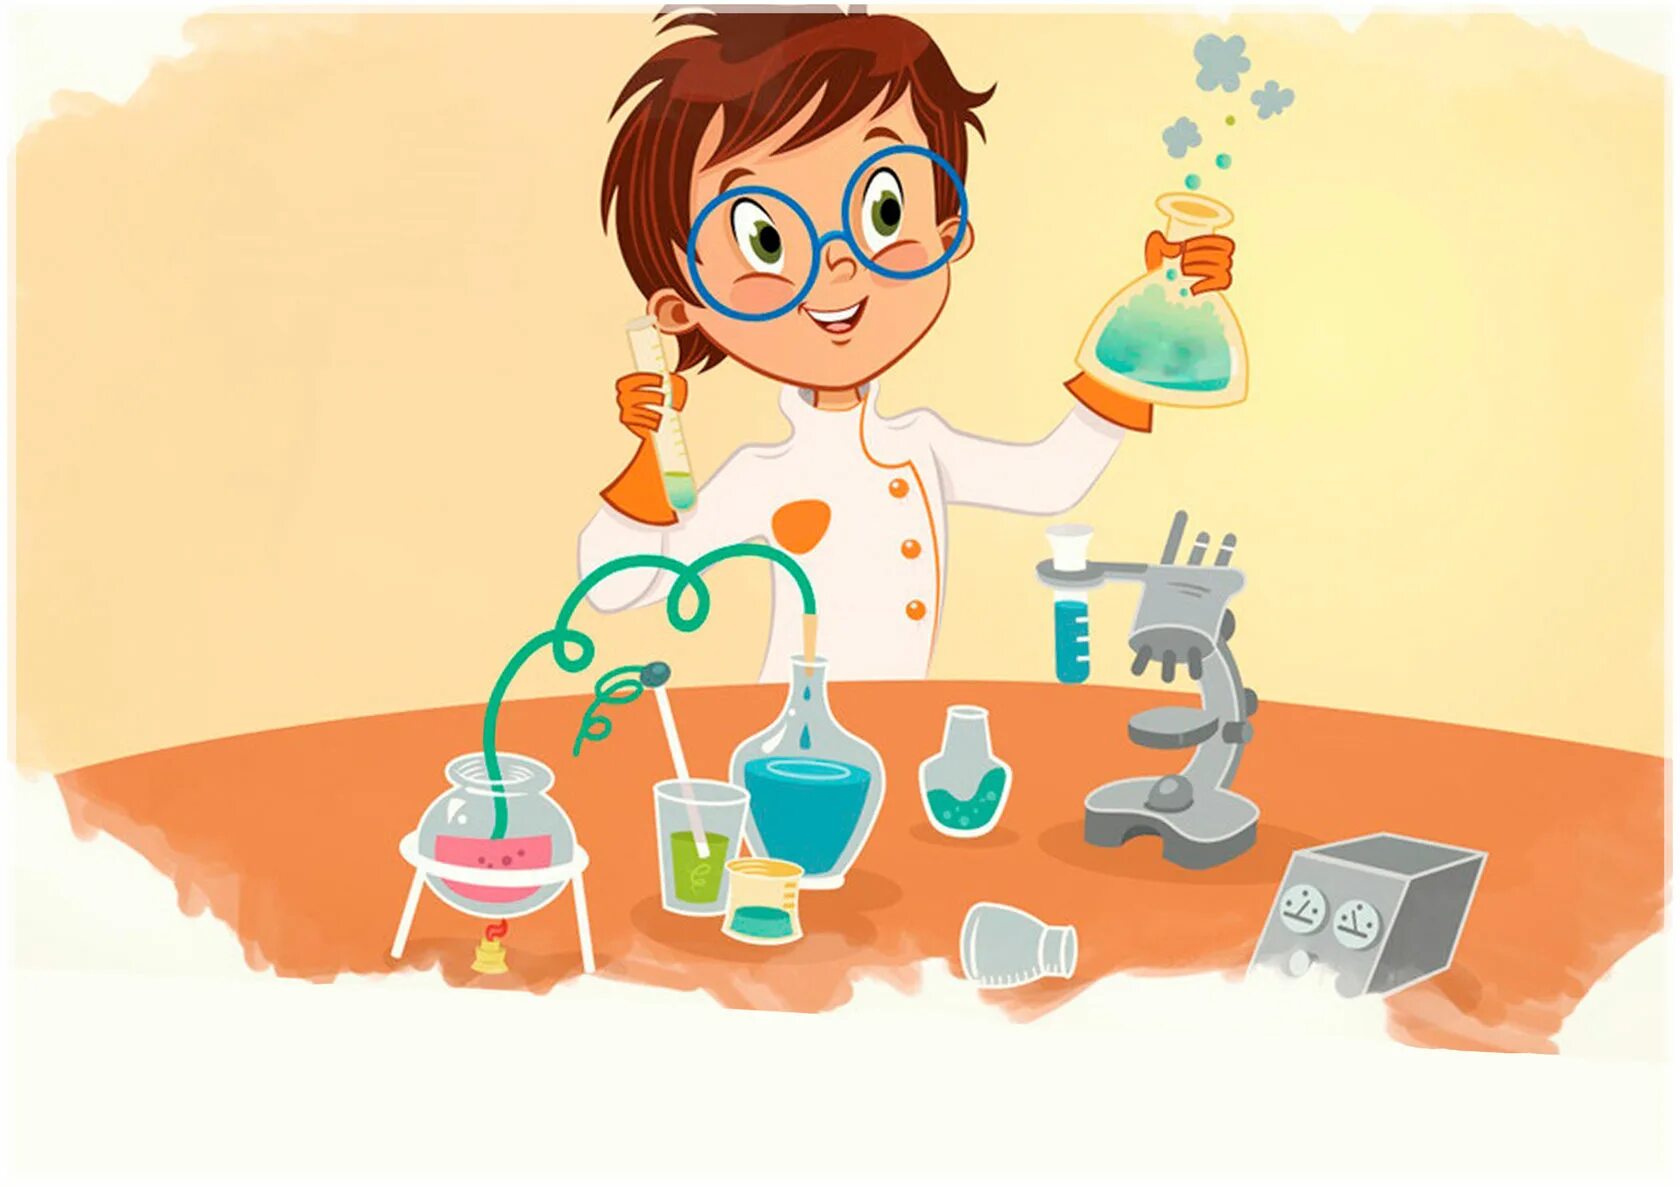 Фон опыт. Опыты и эксперименты для де3 Тей. Лаборатория для детей. Эксперименты для детей. Научная лаборатория для детей.